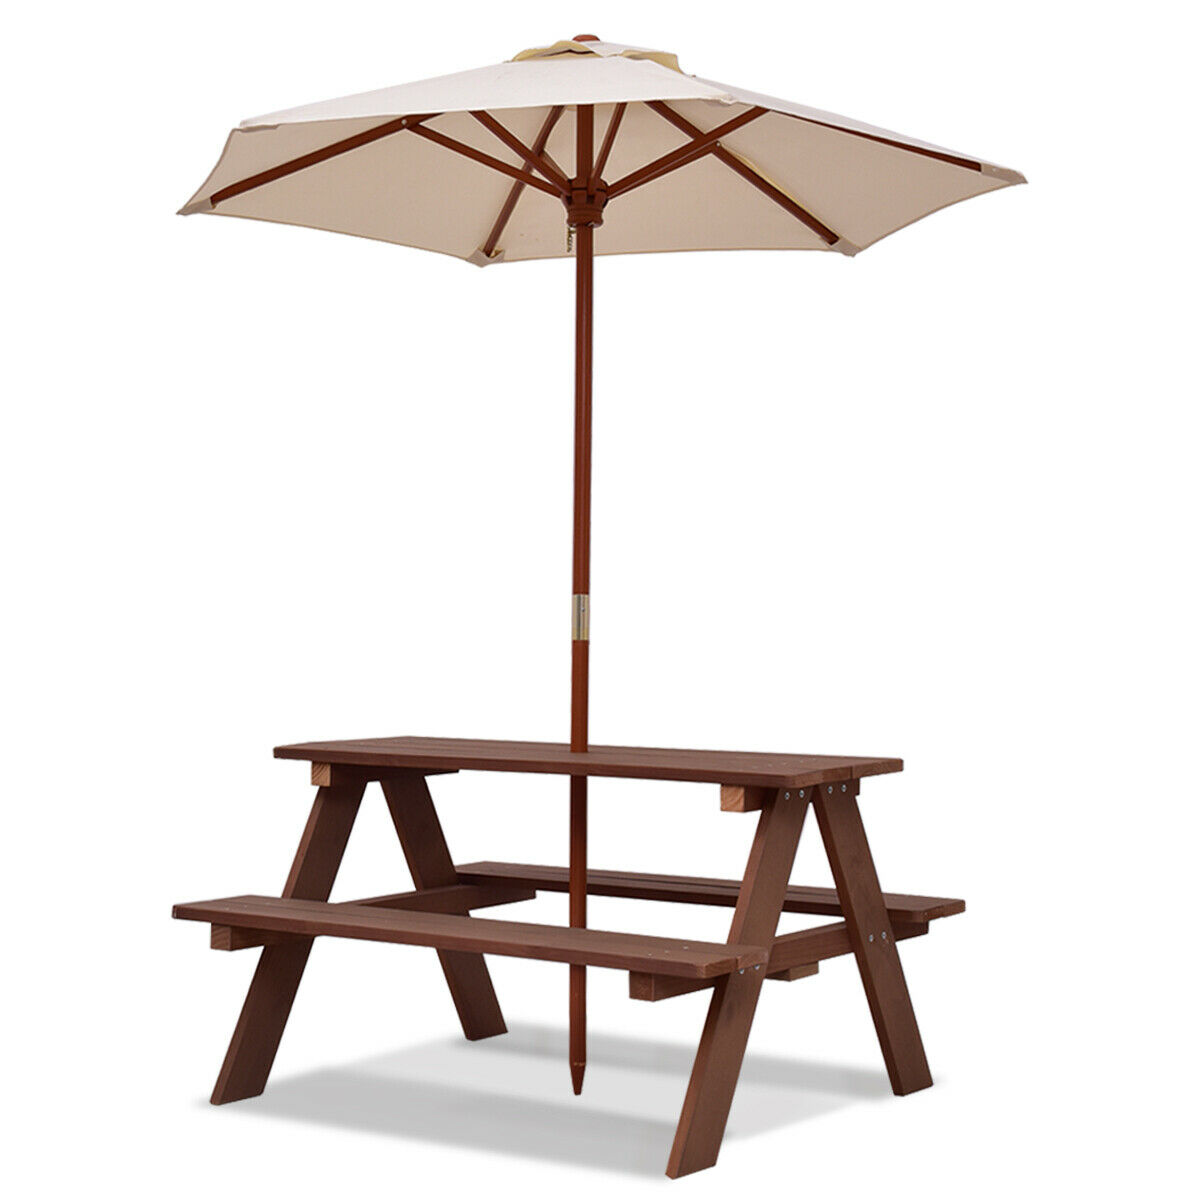 Children's Garden Picnic Table Bench with Sun Umbrella